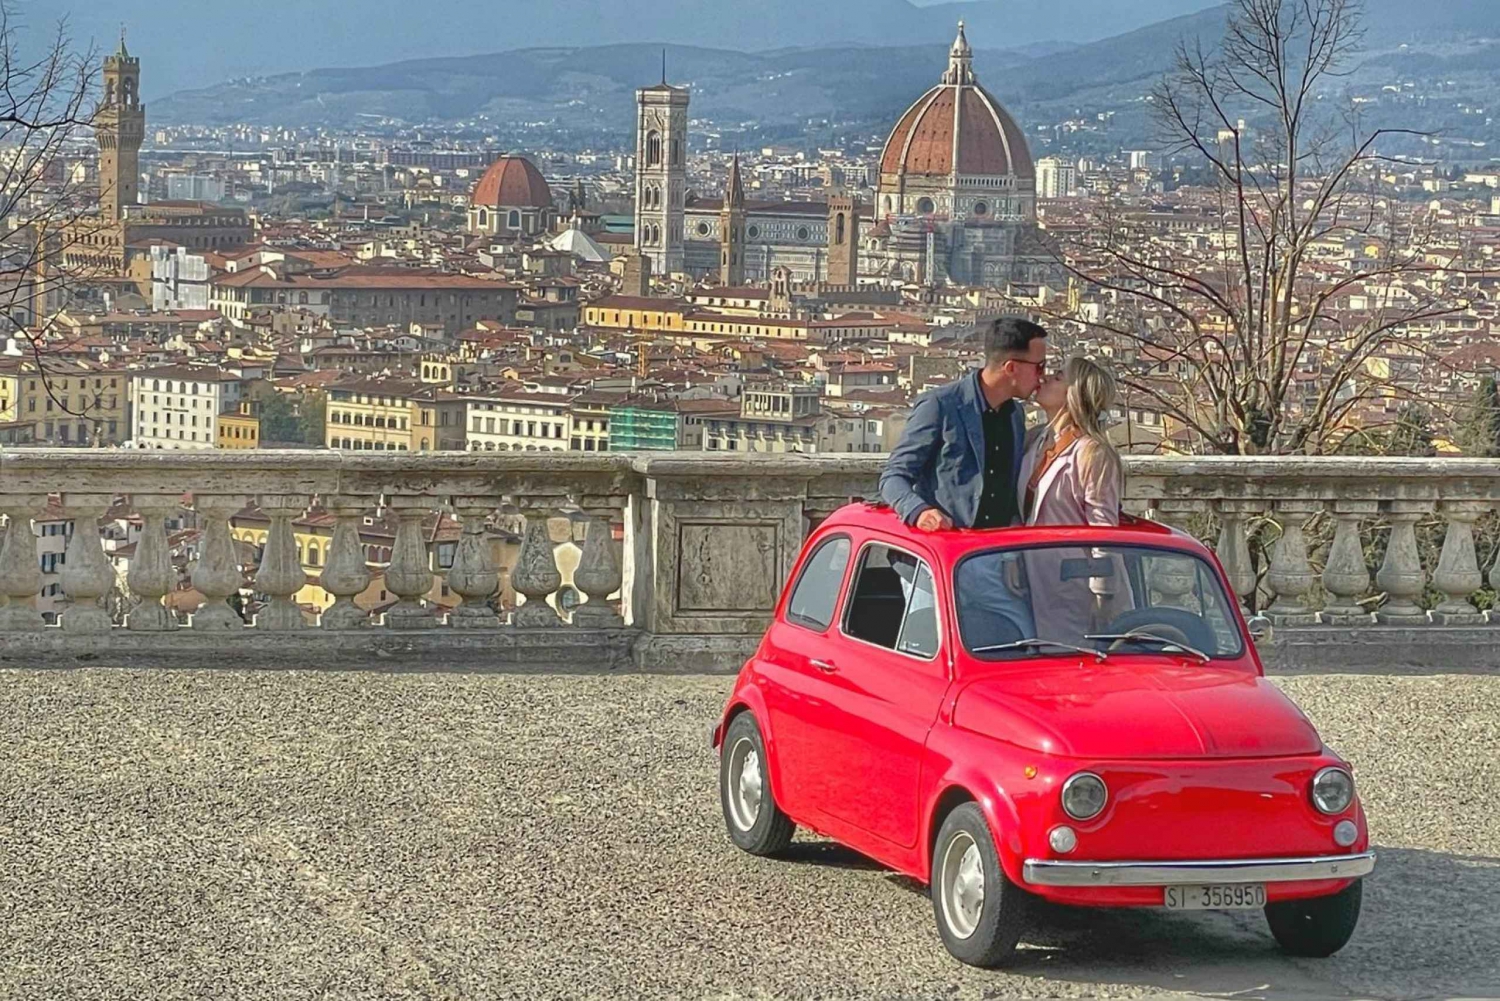 2-godzinna wycieczka zabytkowym Fiatem 500 z degustacją oliwy z oliwek na farmie